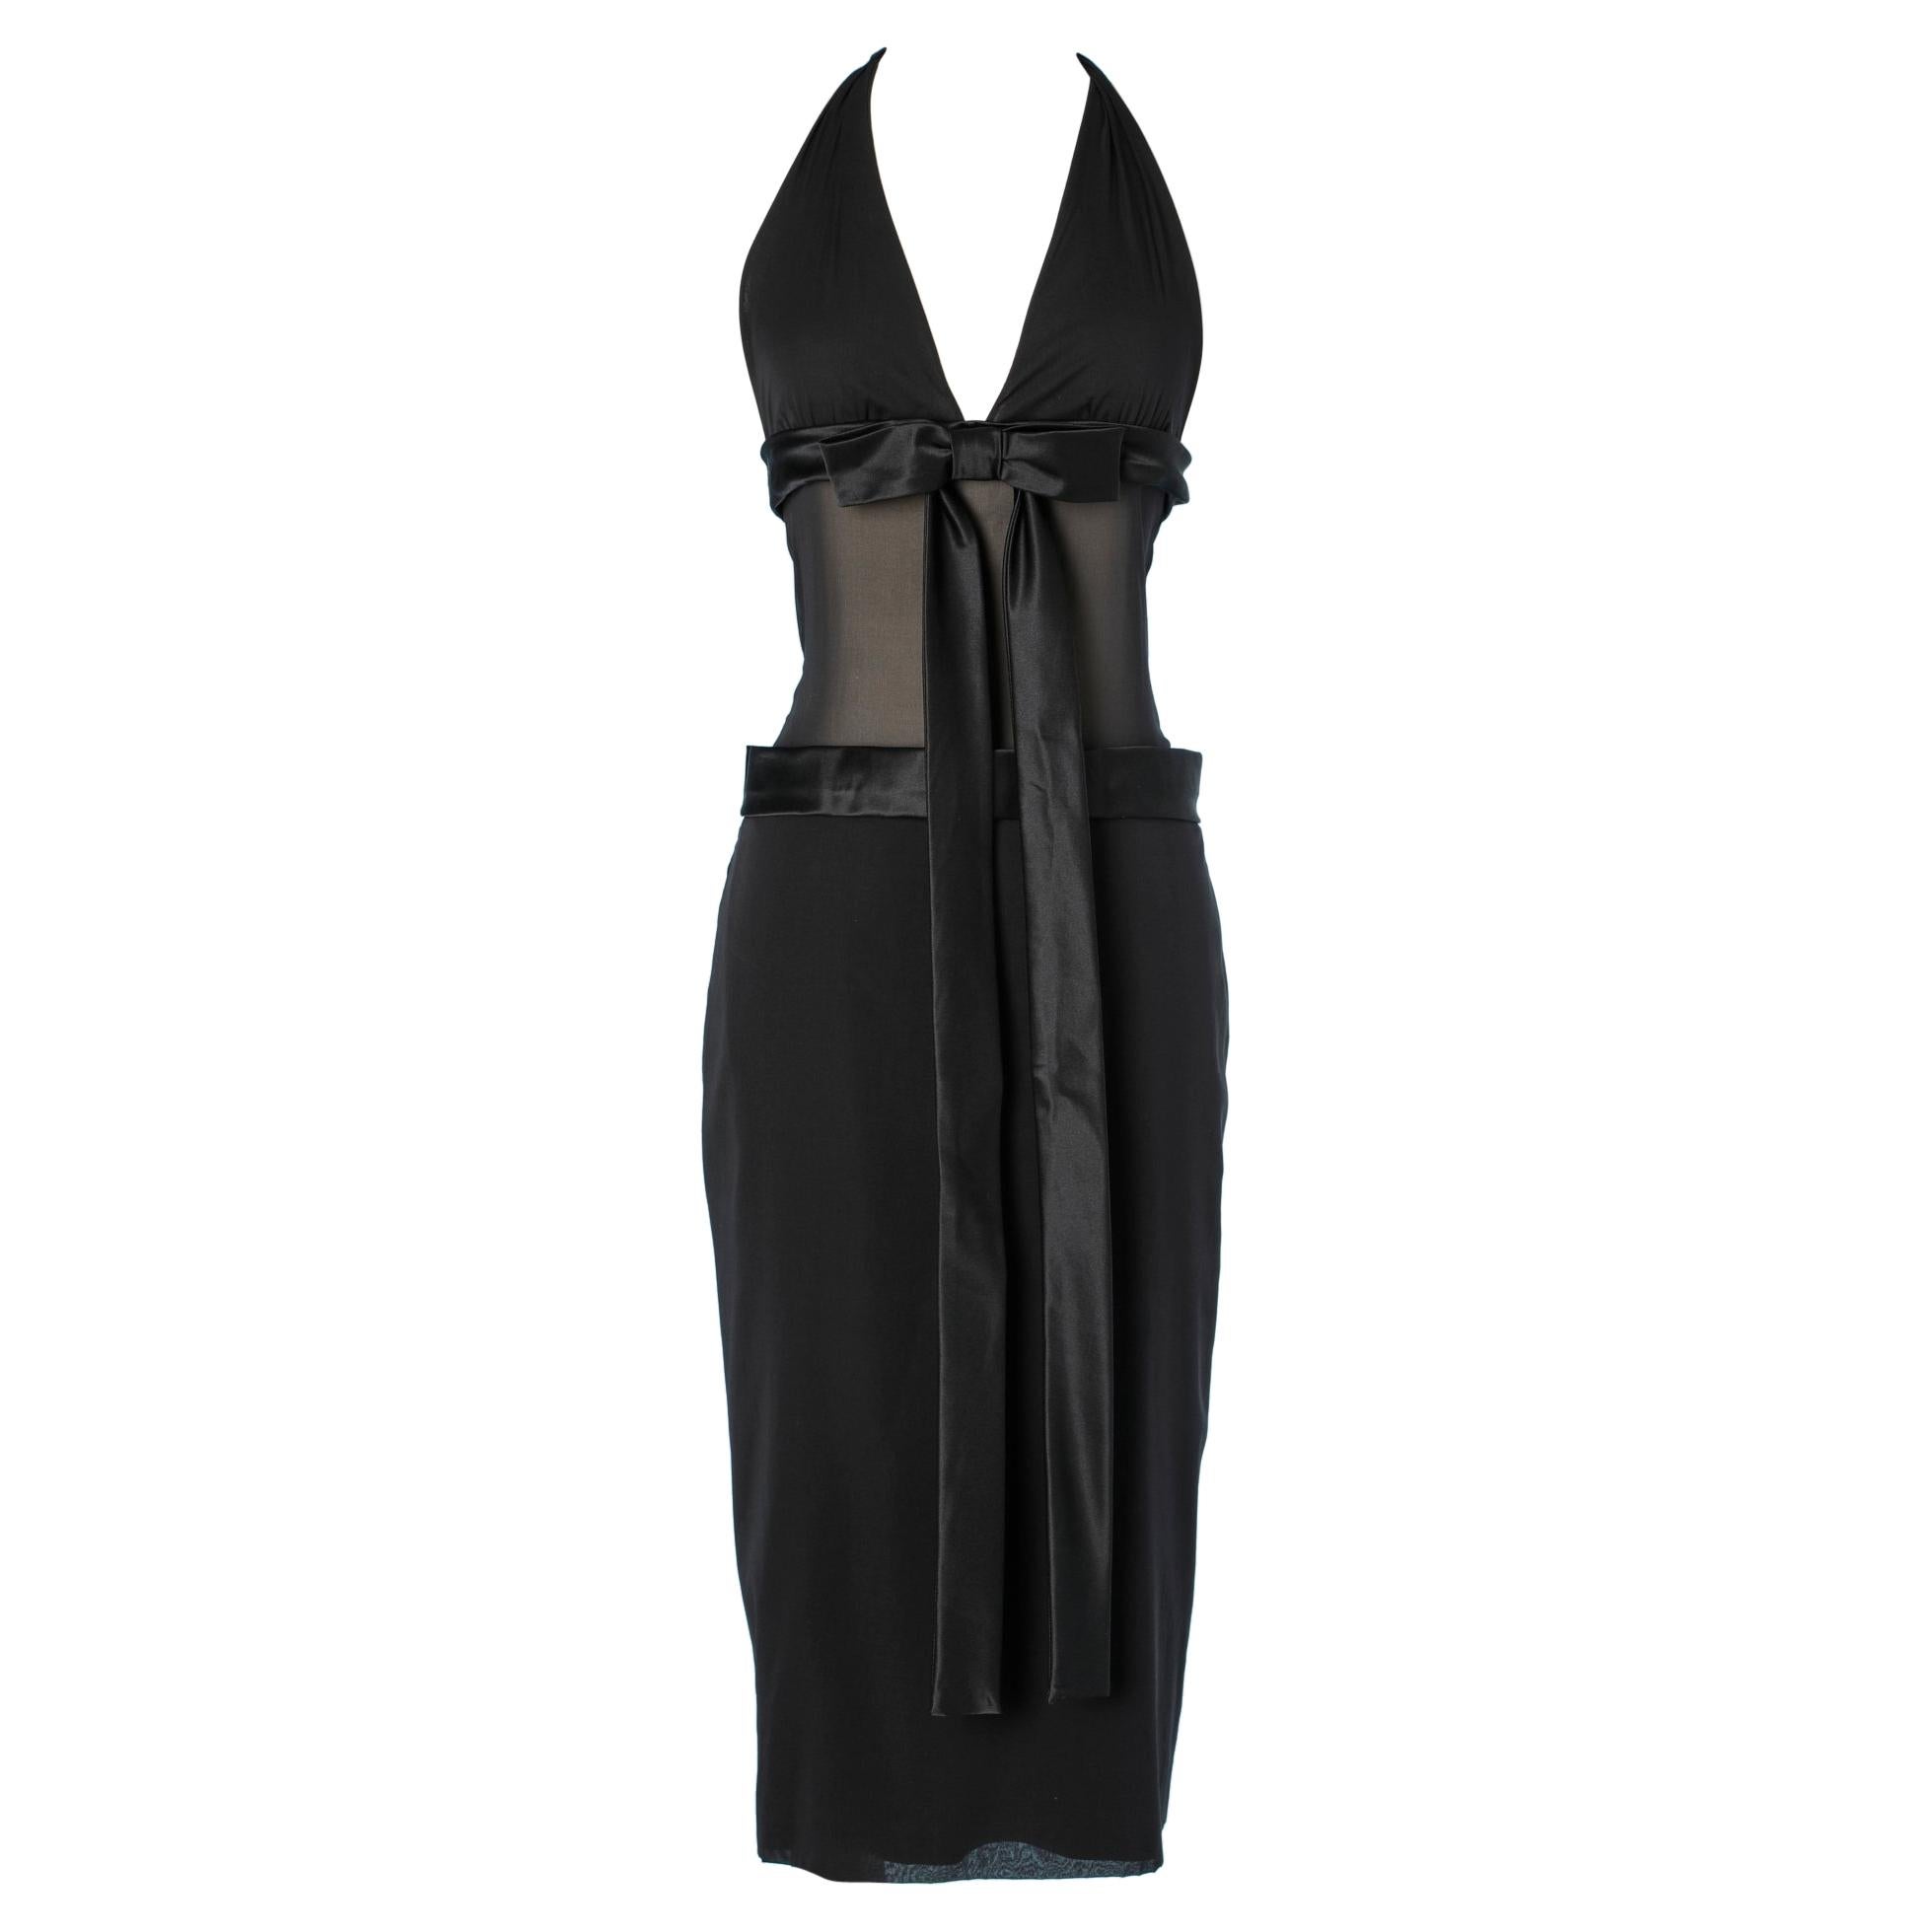 Black evening dress in chiffon, silk and satin Dolce & Gabbana